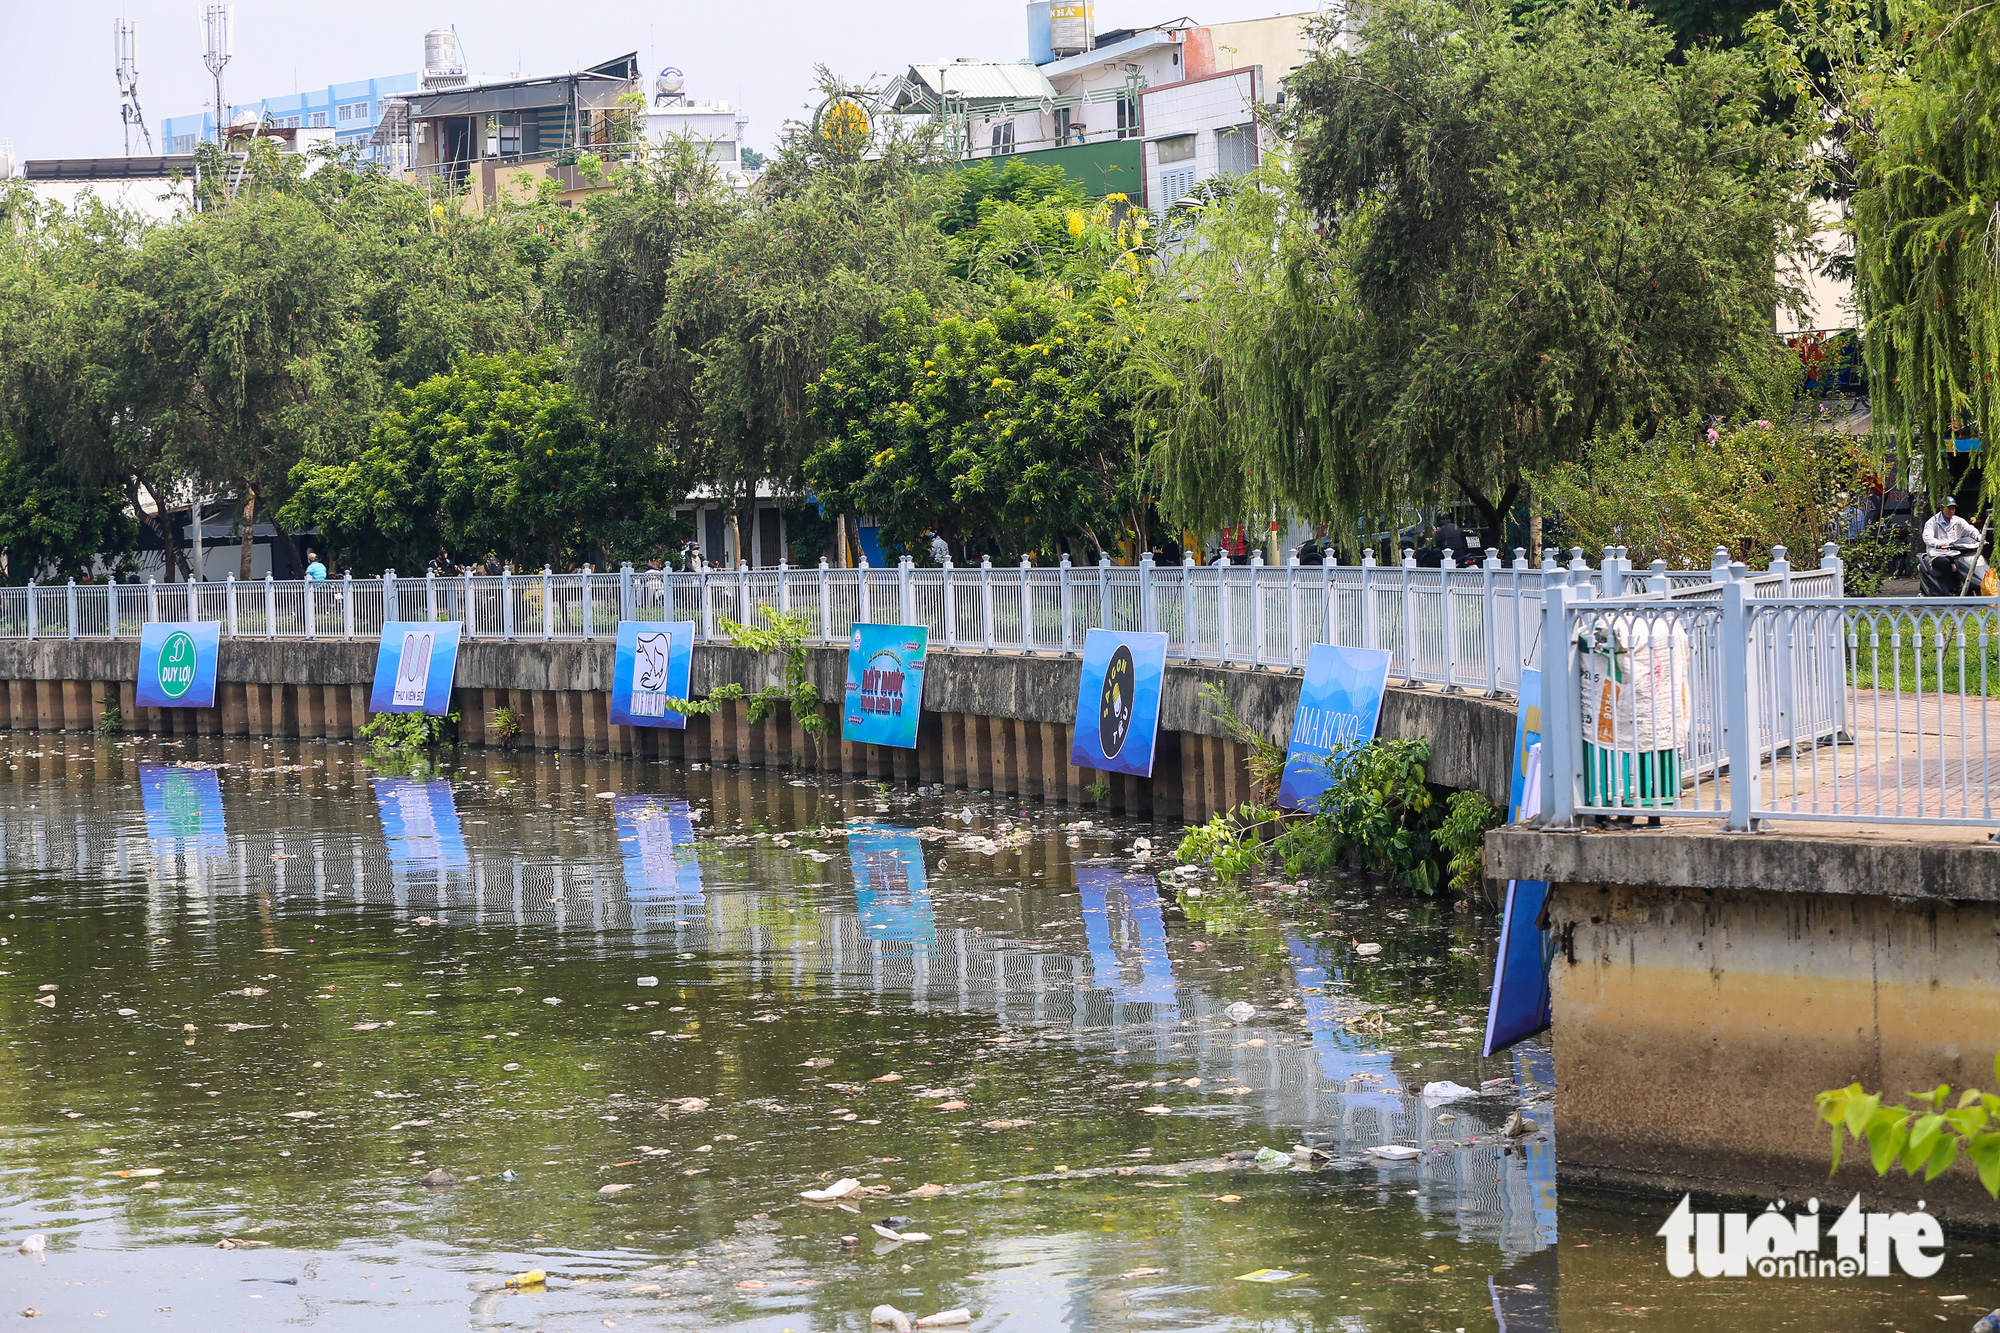 Sau mưa, cá chết, rác nổi lềnh bềnh trên kênh Nhiêu Lộc - Thị Nghè - Ảnh 3.